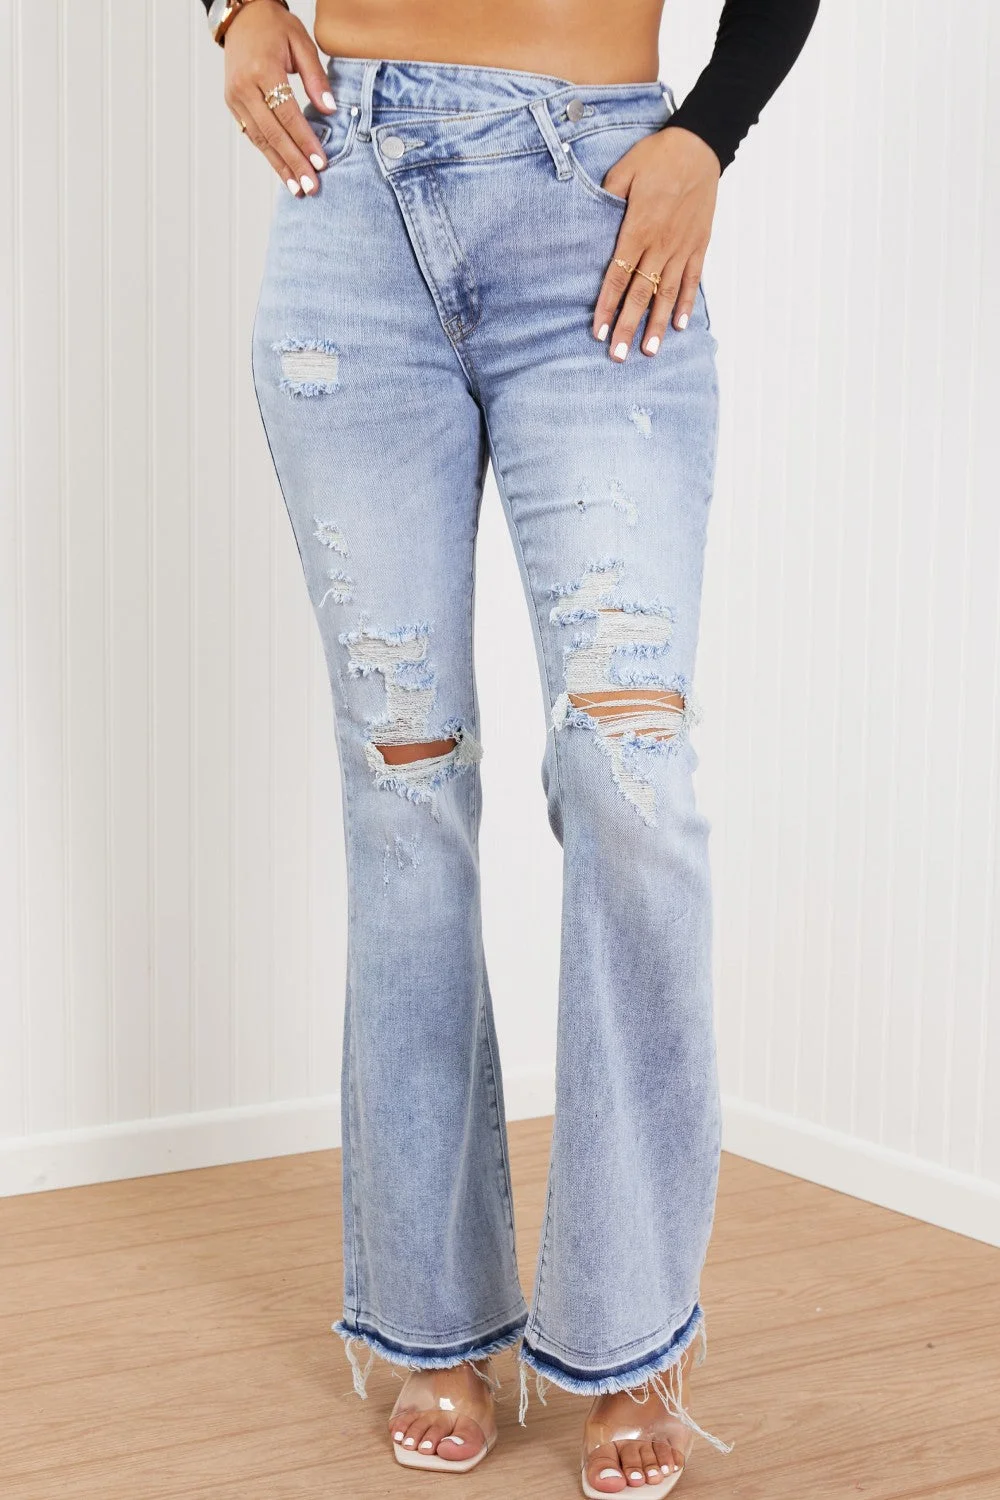 UForever21 RISEN Valerie Full Size Crossover Flared Jeans